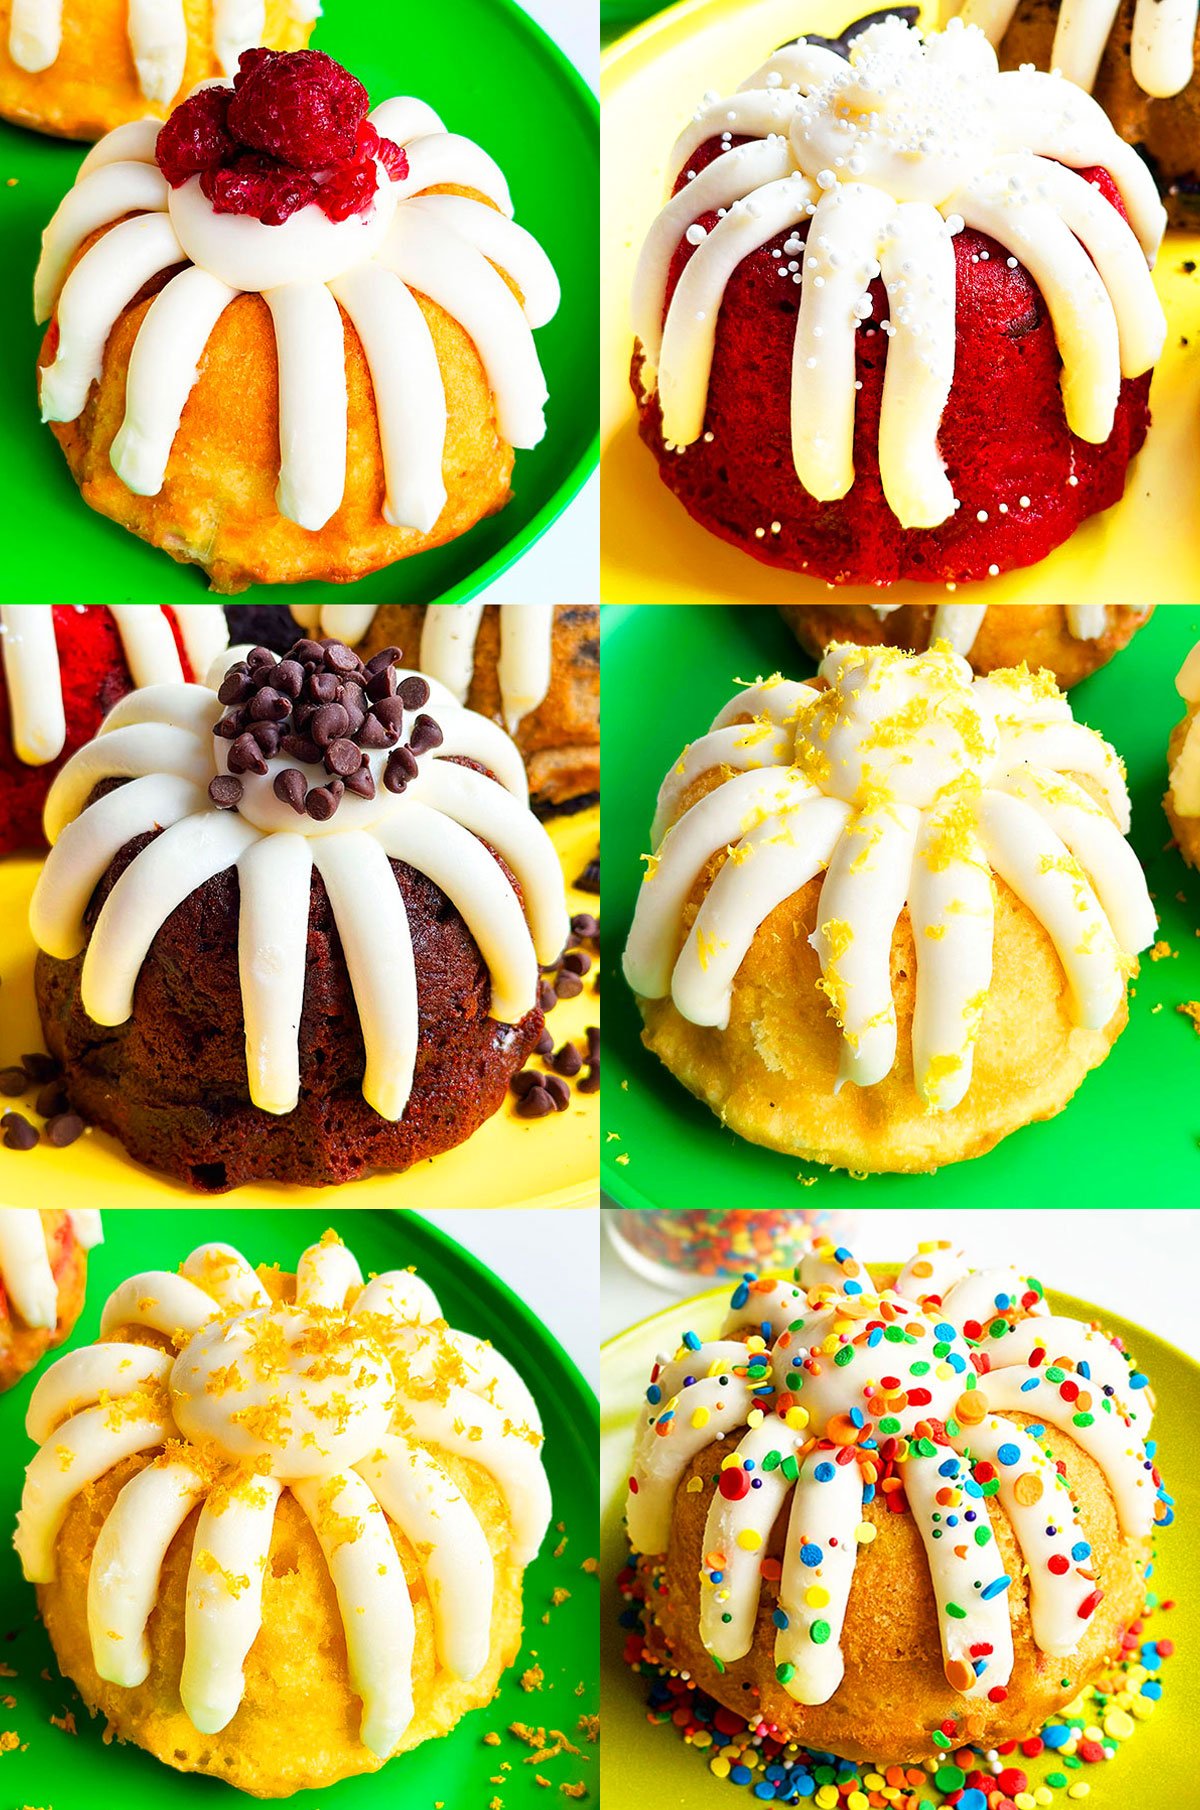 https://cakewhiz.com/wp-content/uploads/2016/09/Mini-Bundt-Cake-Recipes-With-Cake-Mix.jpg